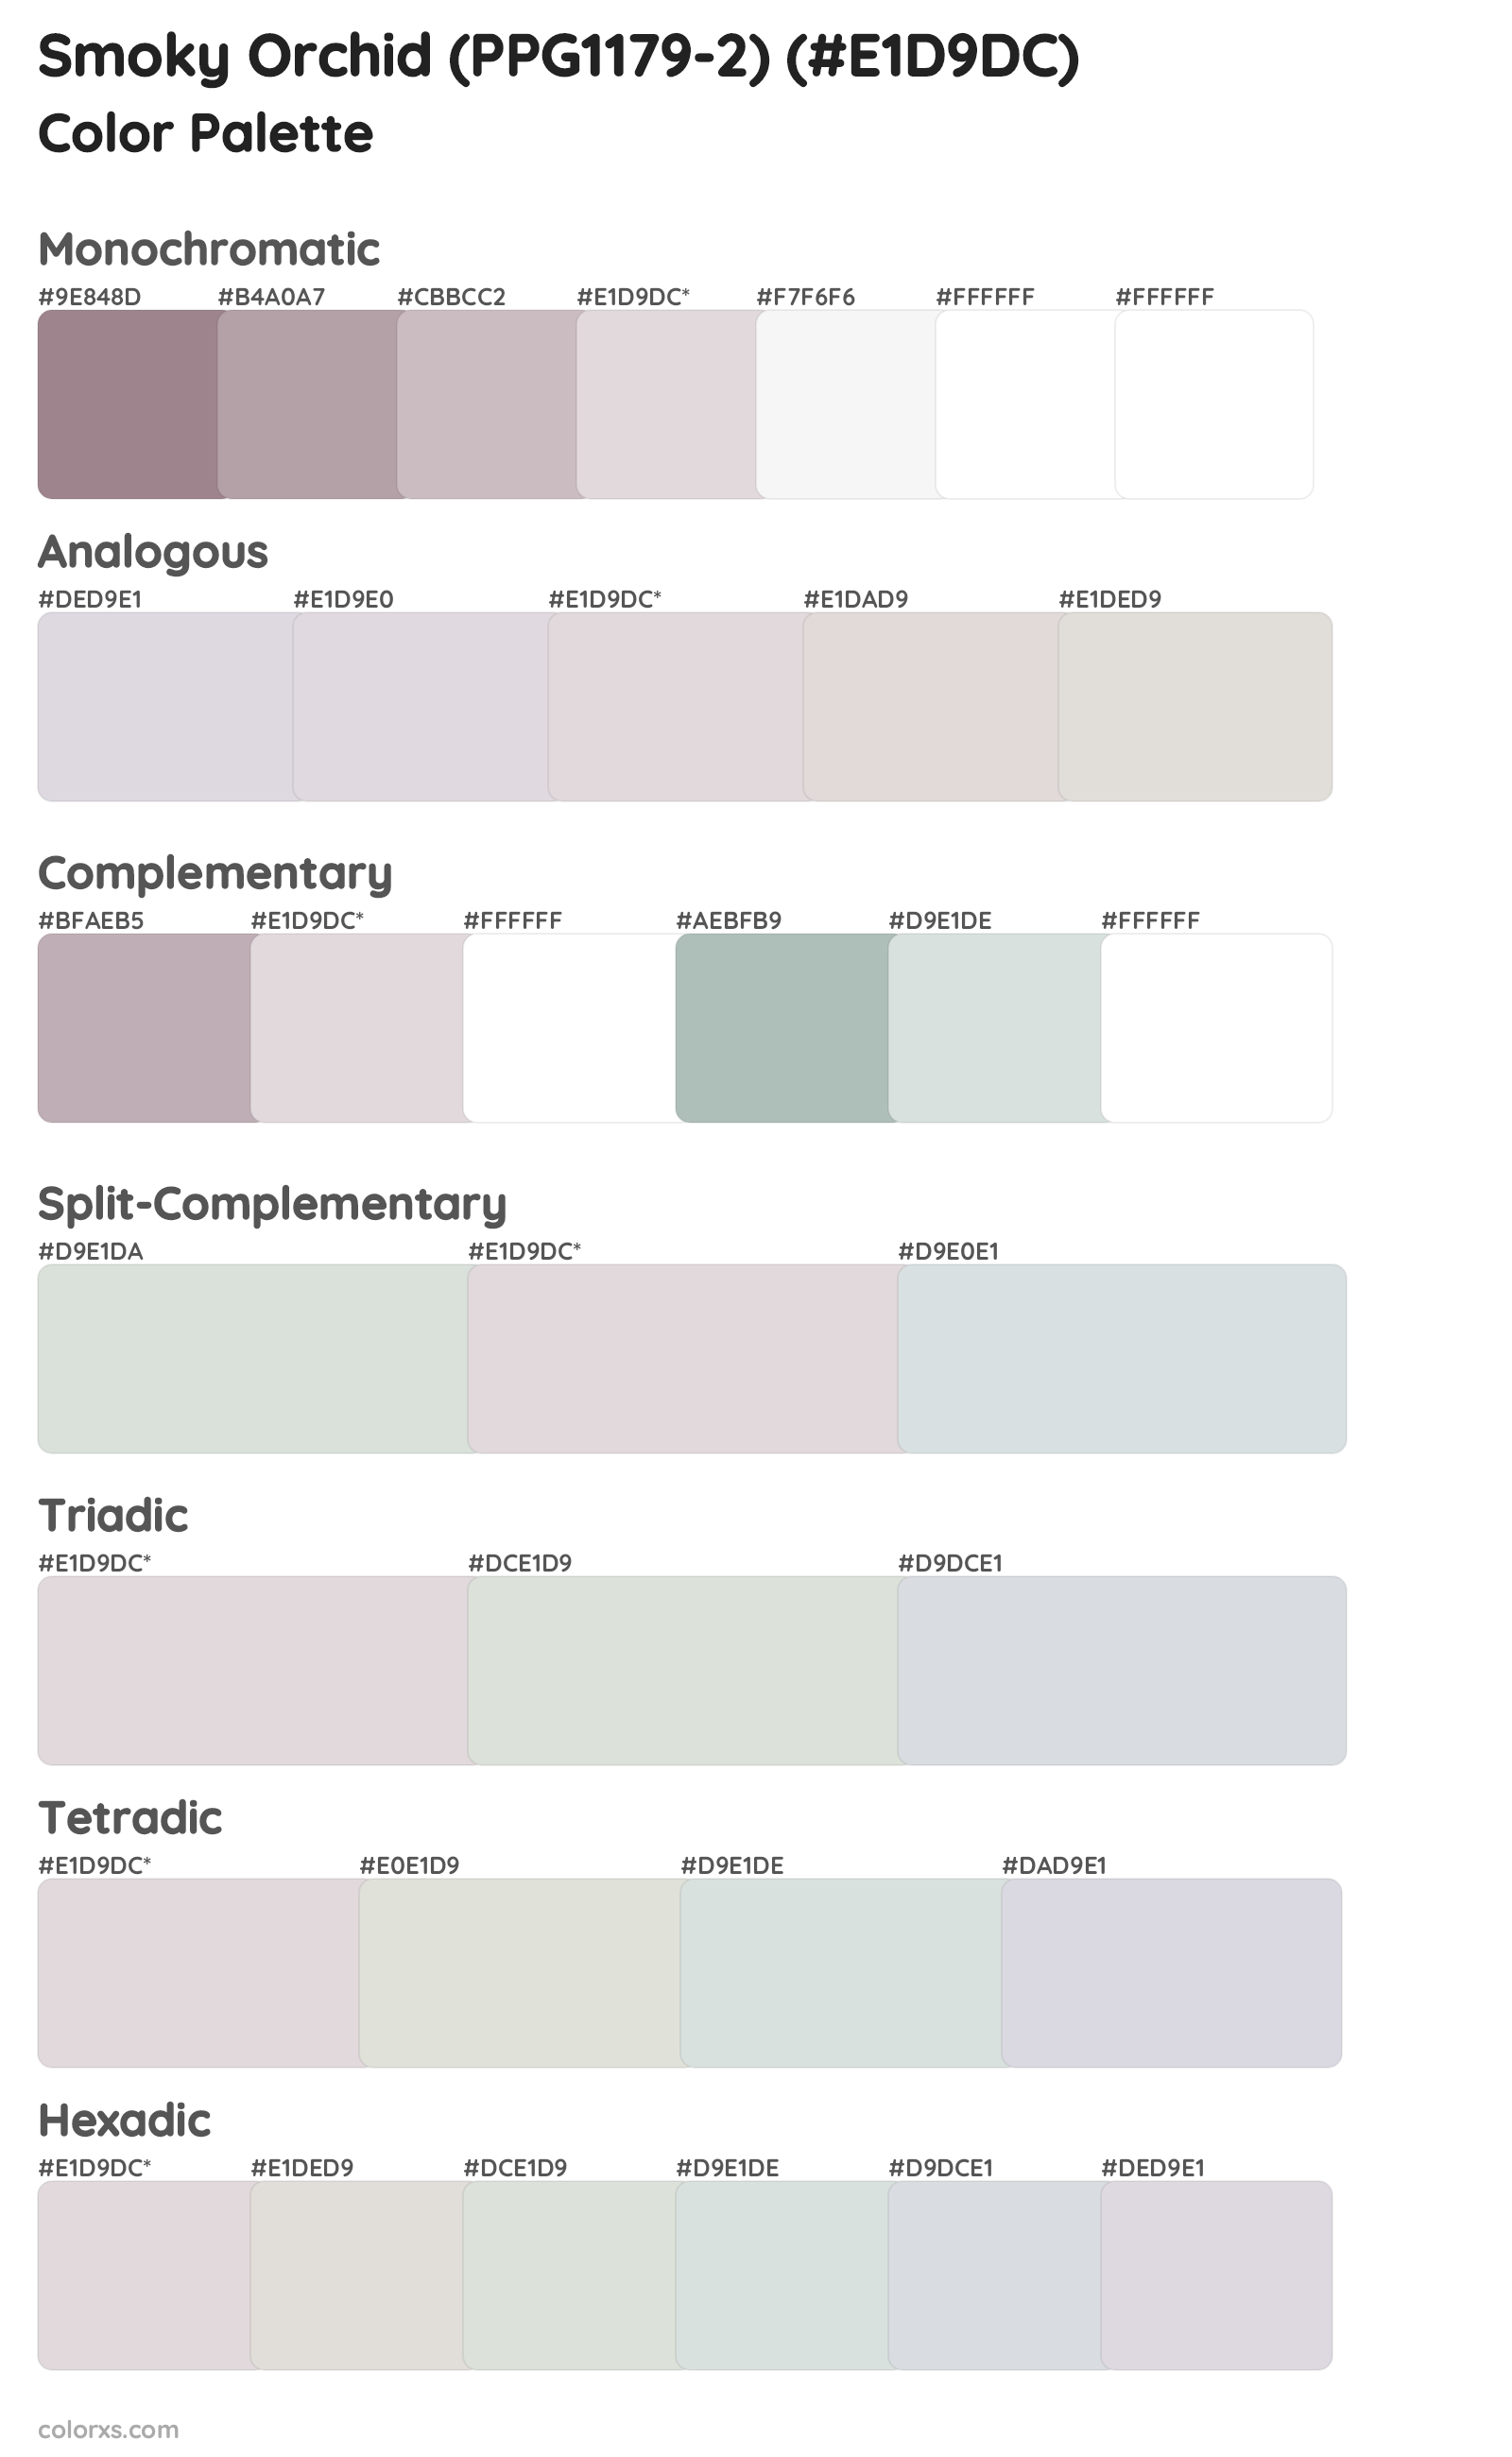 Smoky Orchid (PPG1179-2) Color Scheme Palettes